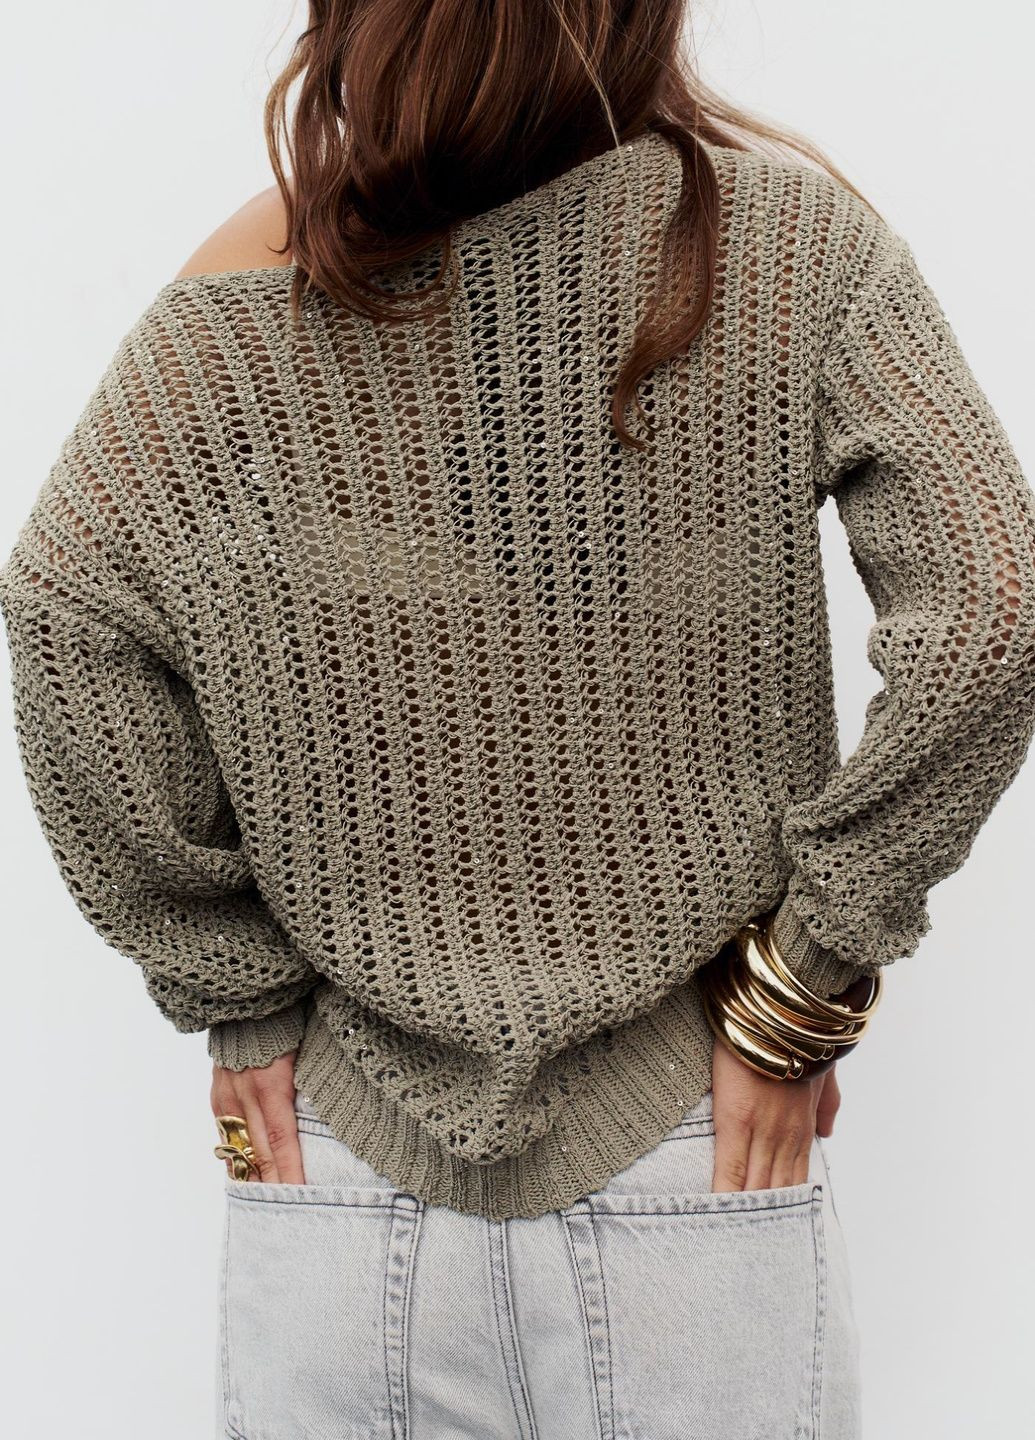 Оливковый (хаки) демисезонный свитер Zara